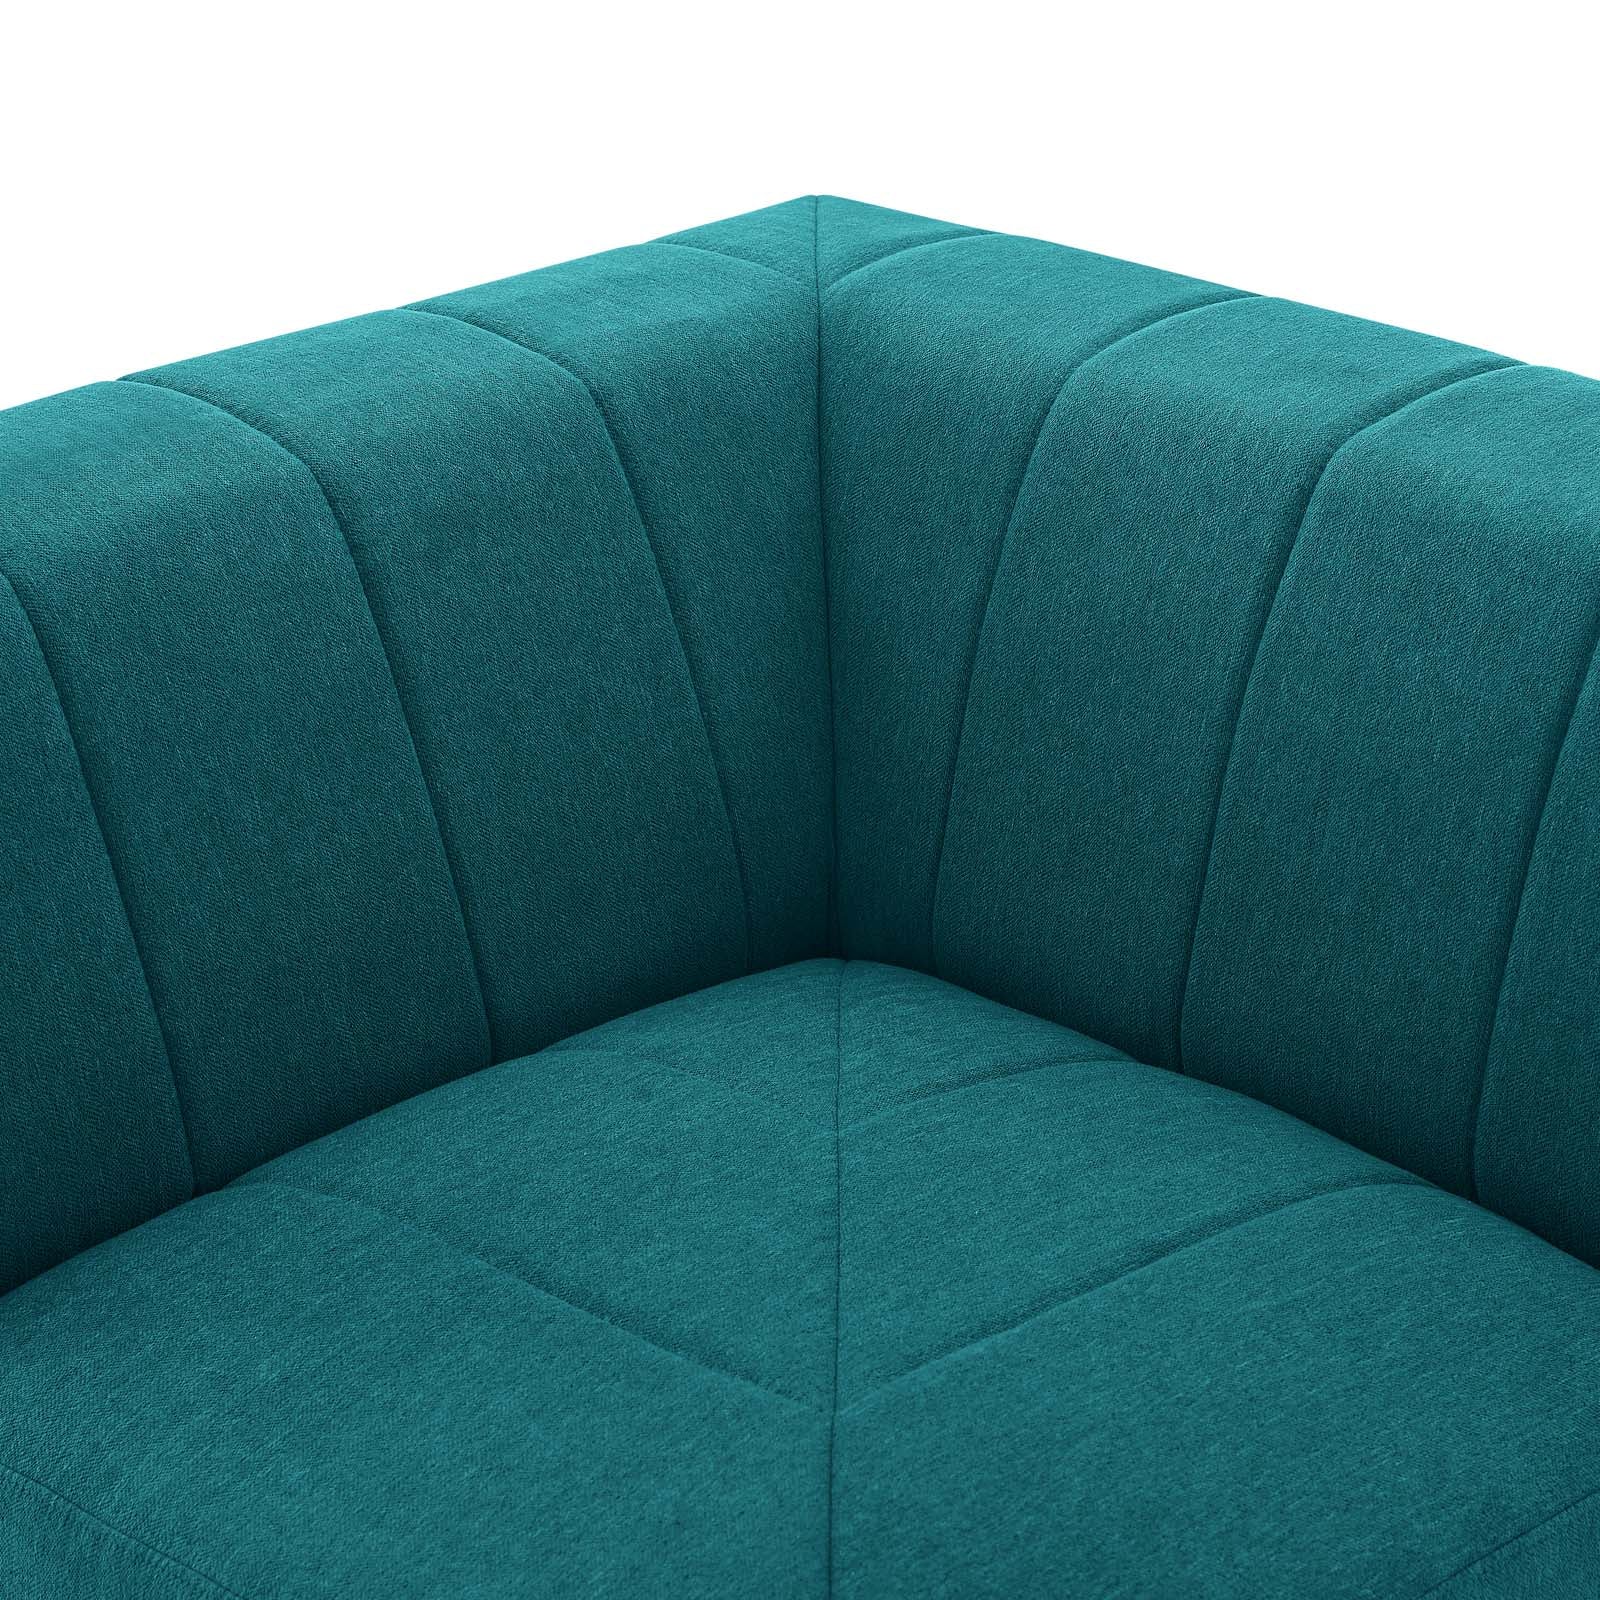 Bartlett Upholstered Fabric Corner Chair - East Shore Modern Home Furnishings